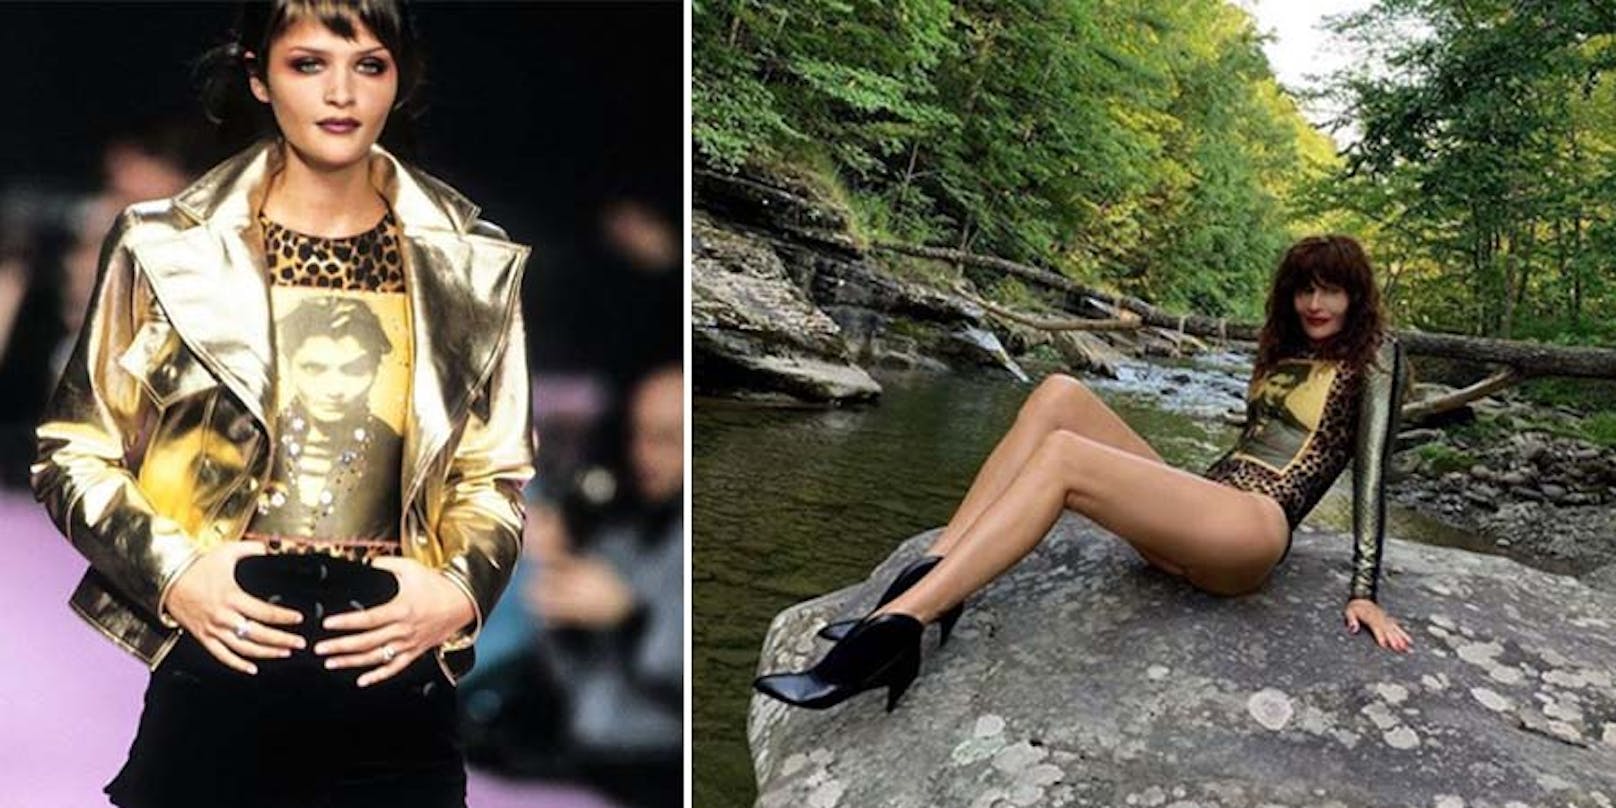 Nach 30 Jahren schlüpft <strong>Helena Christensen</strong> wieder in einen Lacroix-Body: "Sehr dehnbarer Stoff", scherzt das Supermodel auf Instagram.